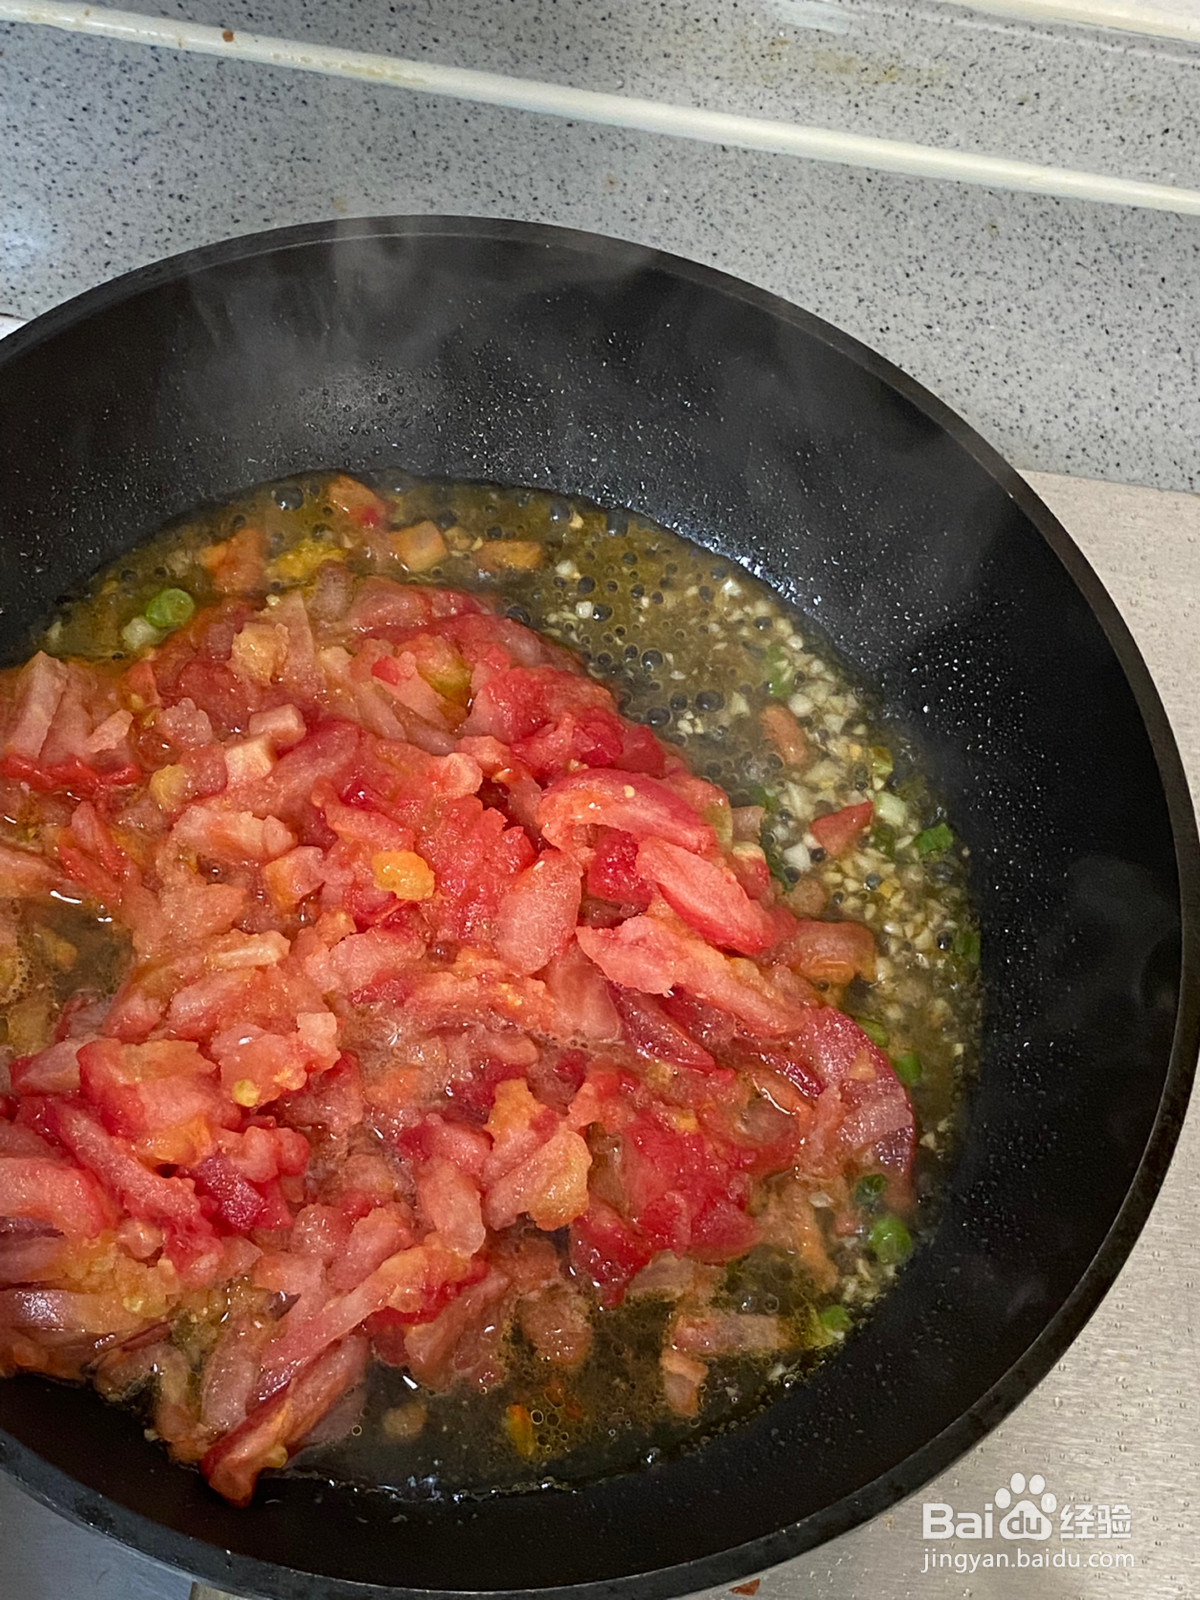 番茄浓汤肥牛卷的做法